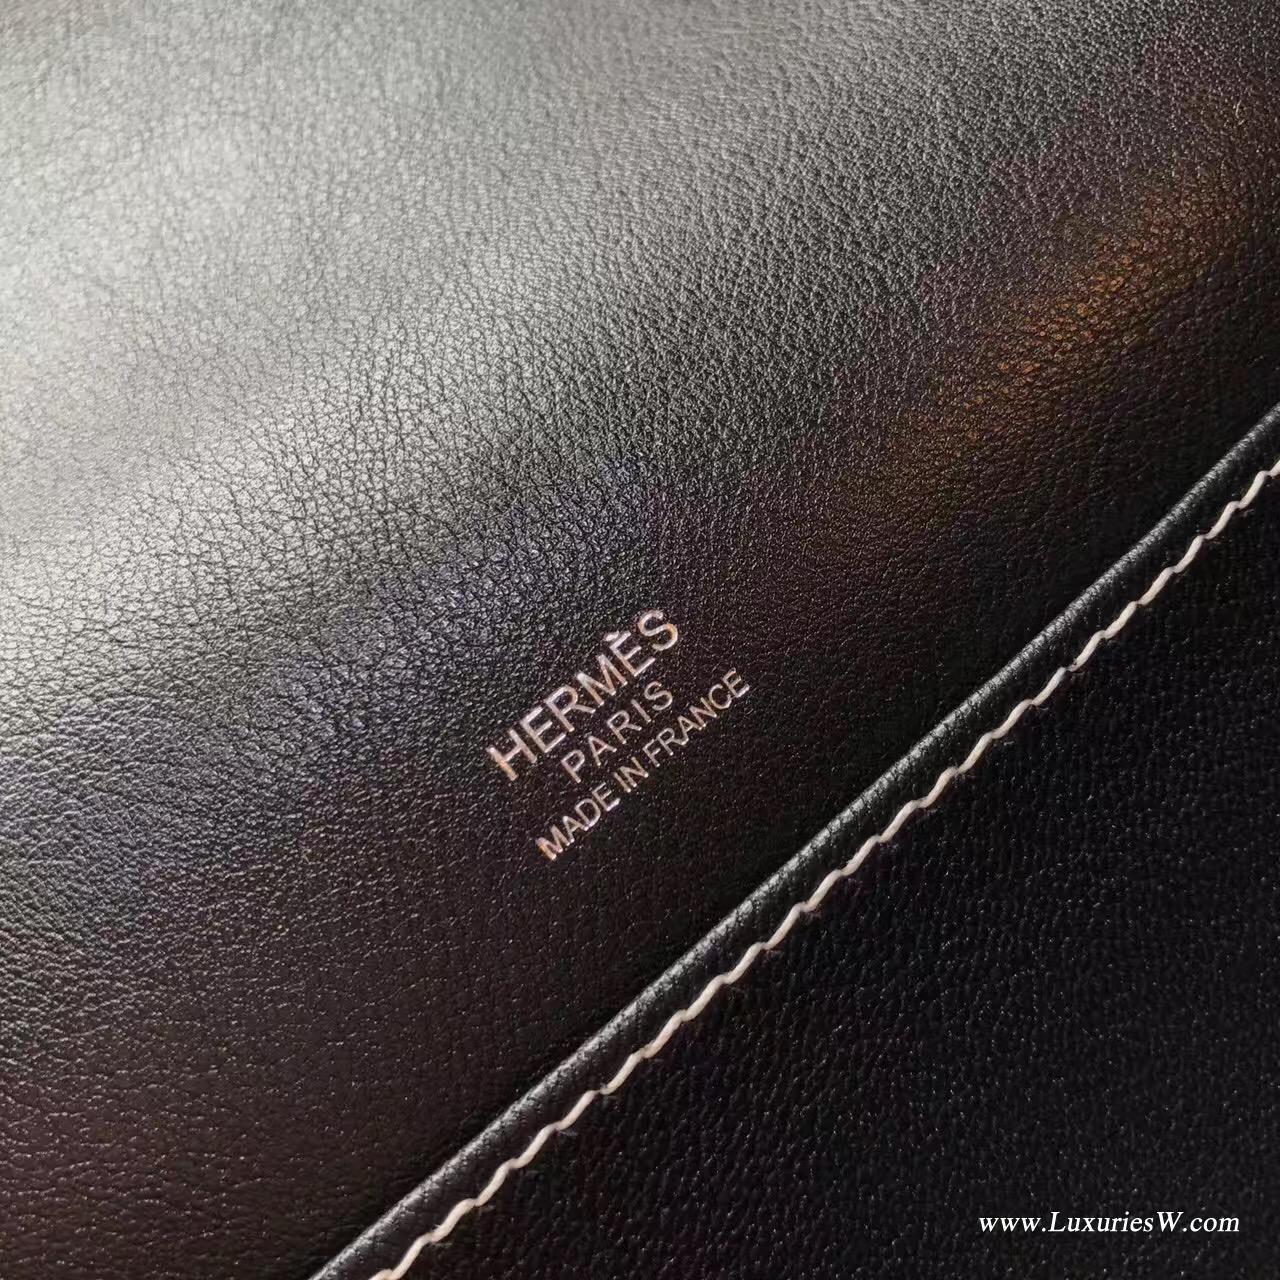 爱马仕最具线条感的包袋Roulis尺寸价格目录